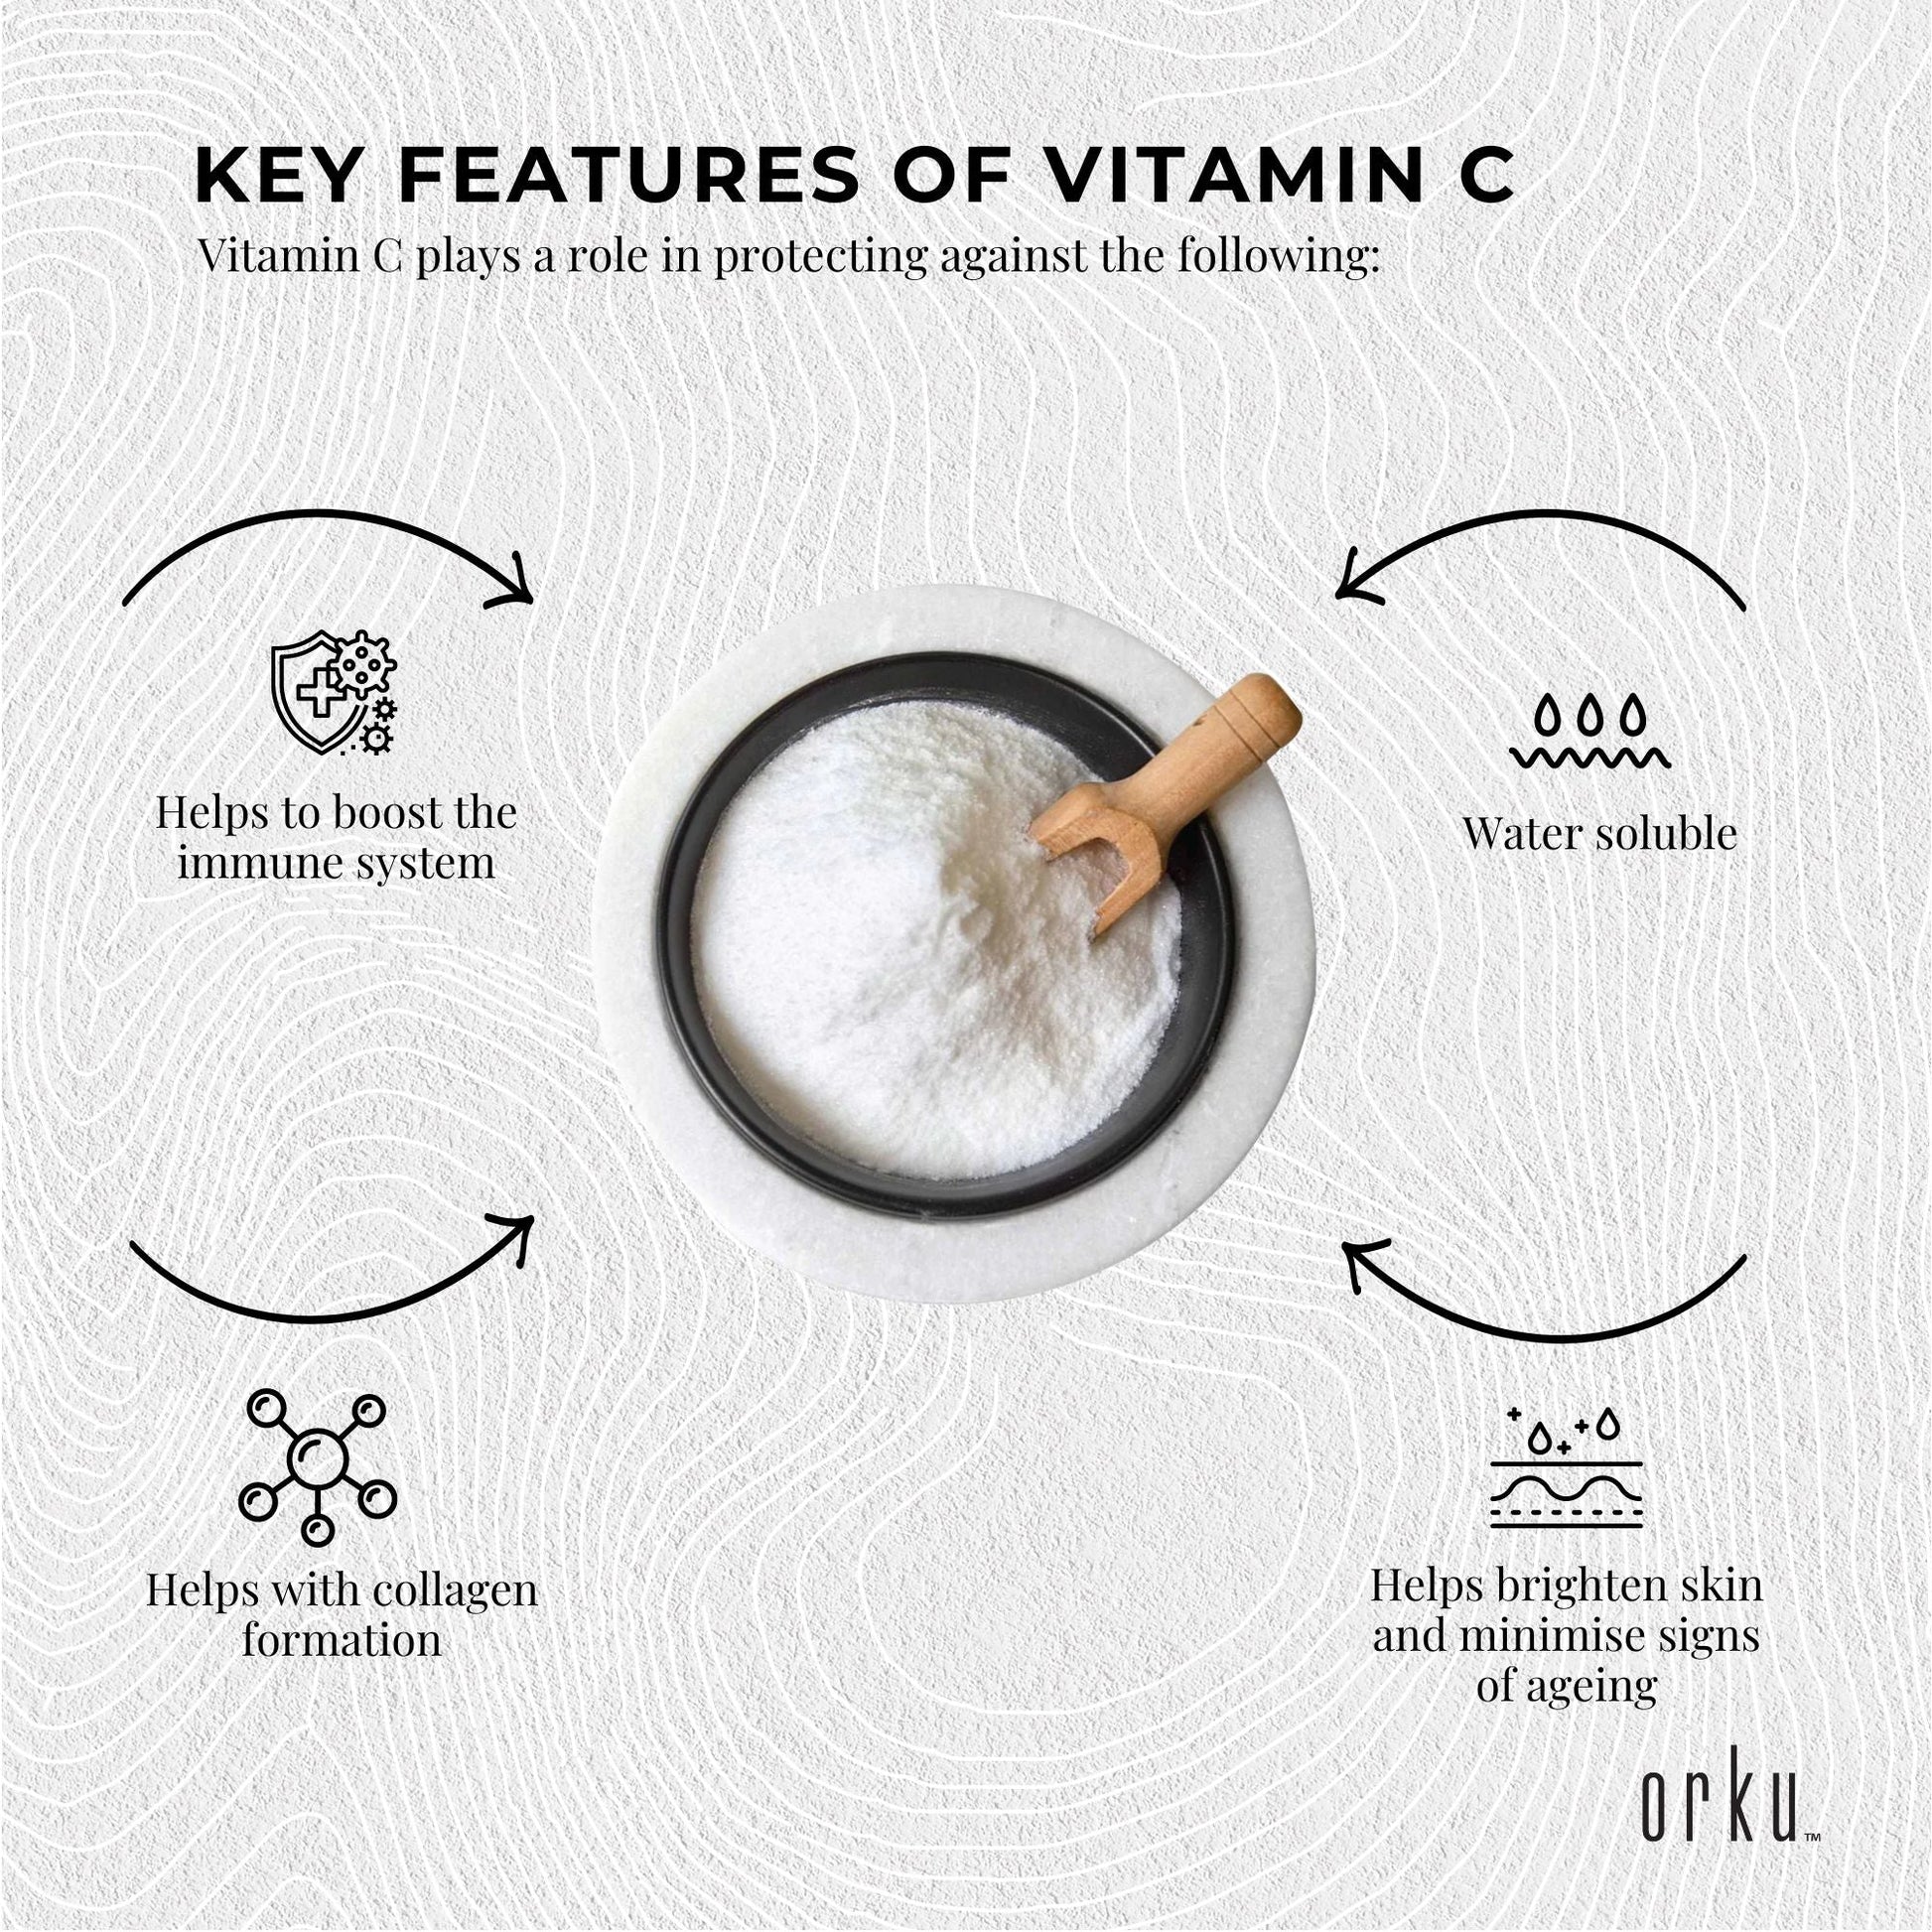 2Kg Vitamin C Powder L-Ascorbic Acid Pure Pharmaceutical Grade Supplement